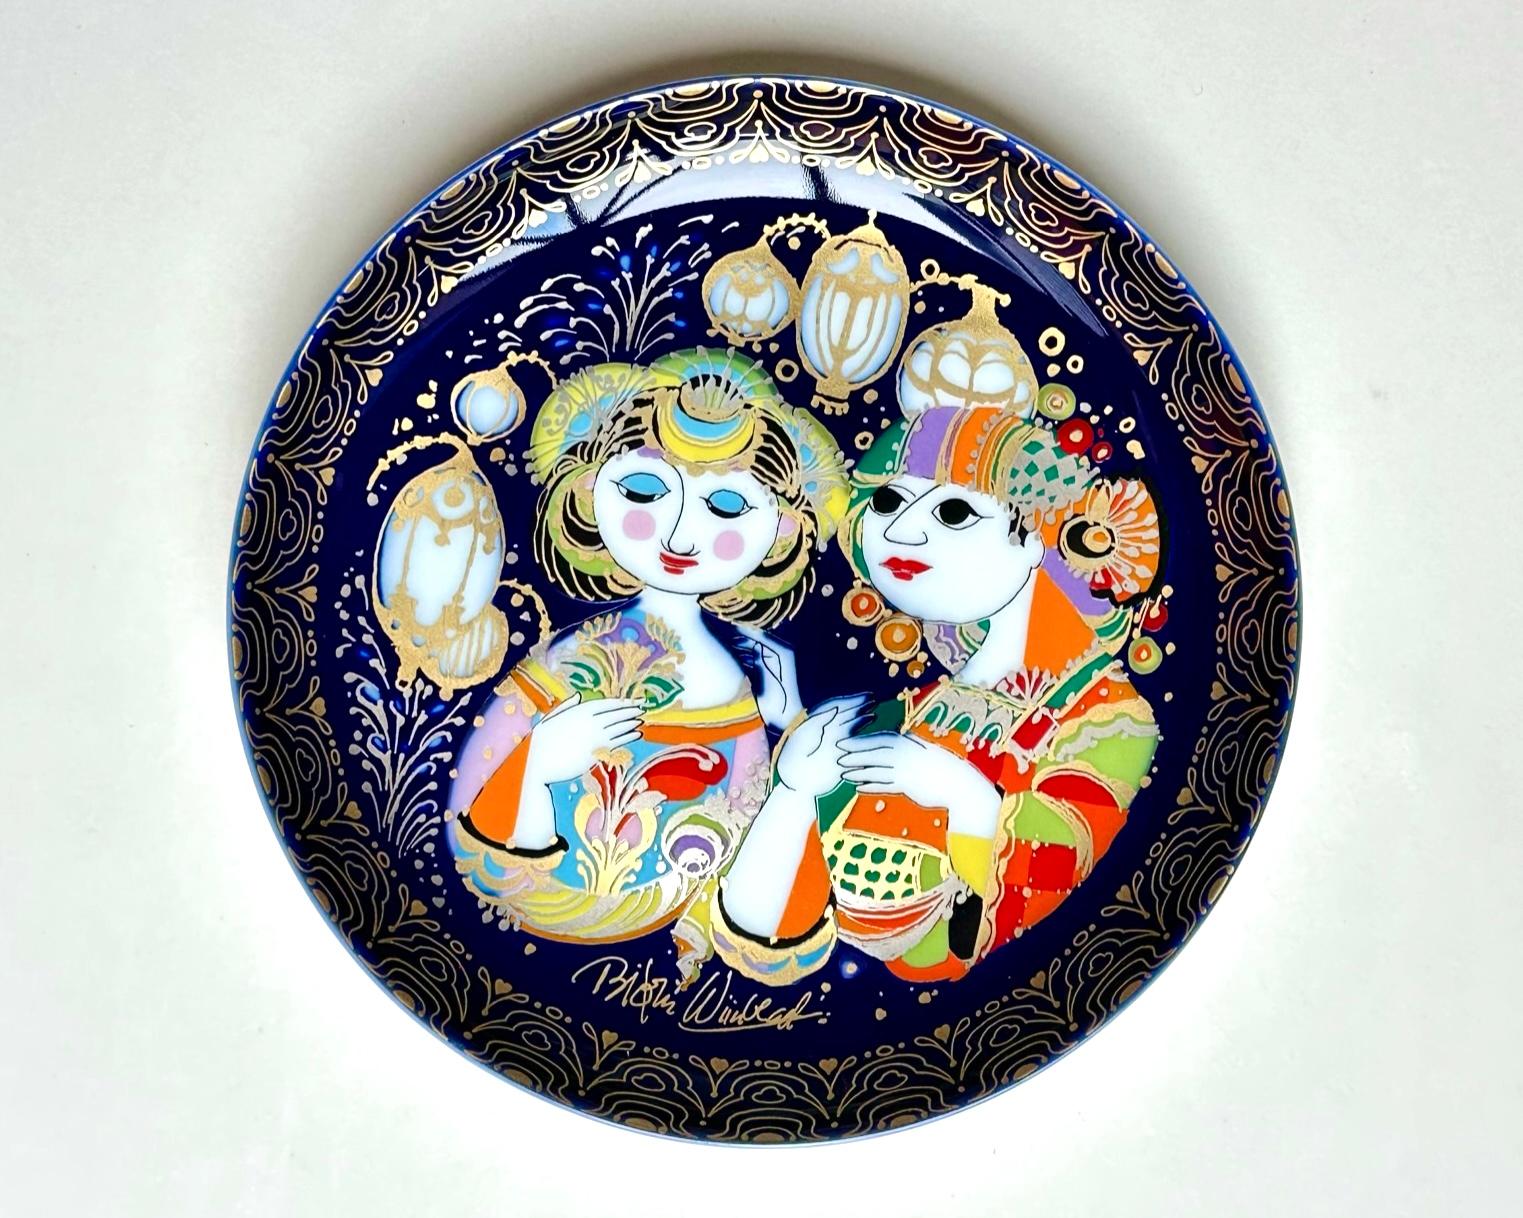 Magnifiques assiettes décoratives conçues par le célèbre artiste danois Bjorn Wiinblad pour Rosenthal.

Allemagne. 1970s.

Assiettes en porcelaine de la fin du XXe siècle inspirées des contes de fées 